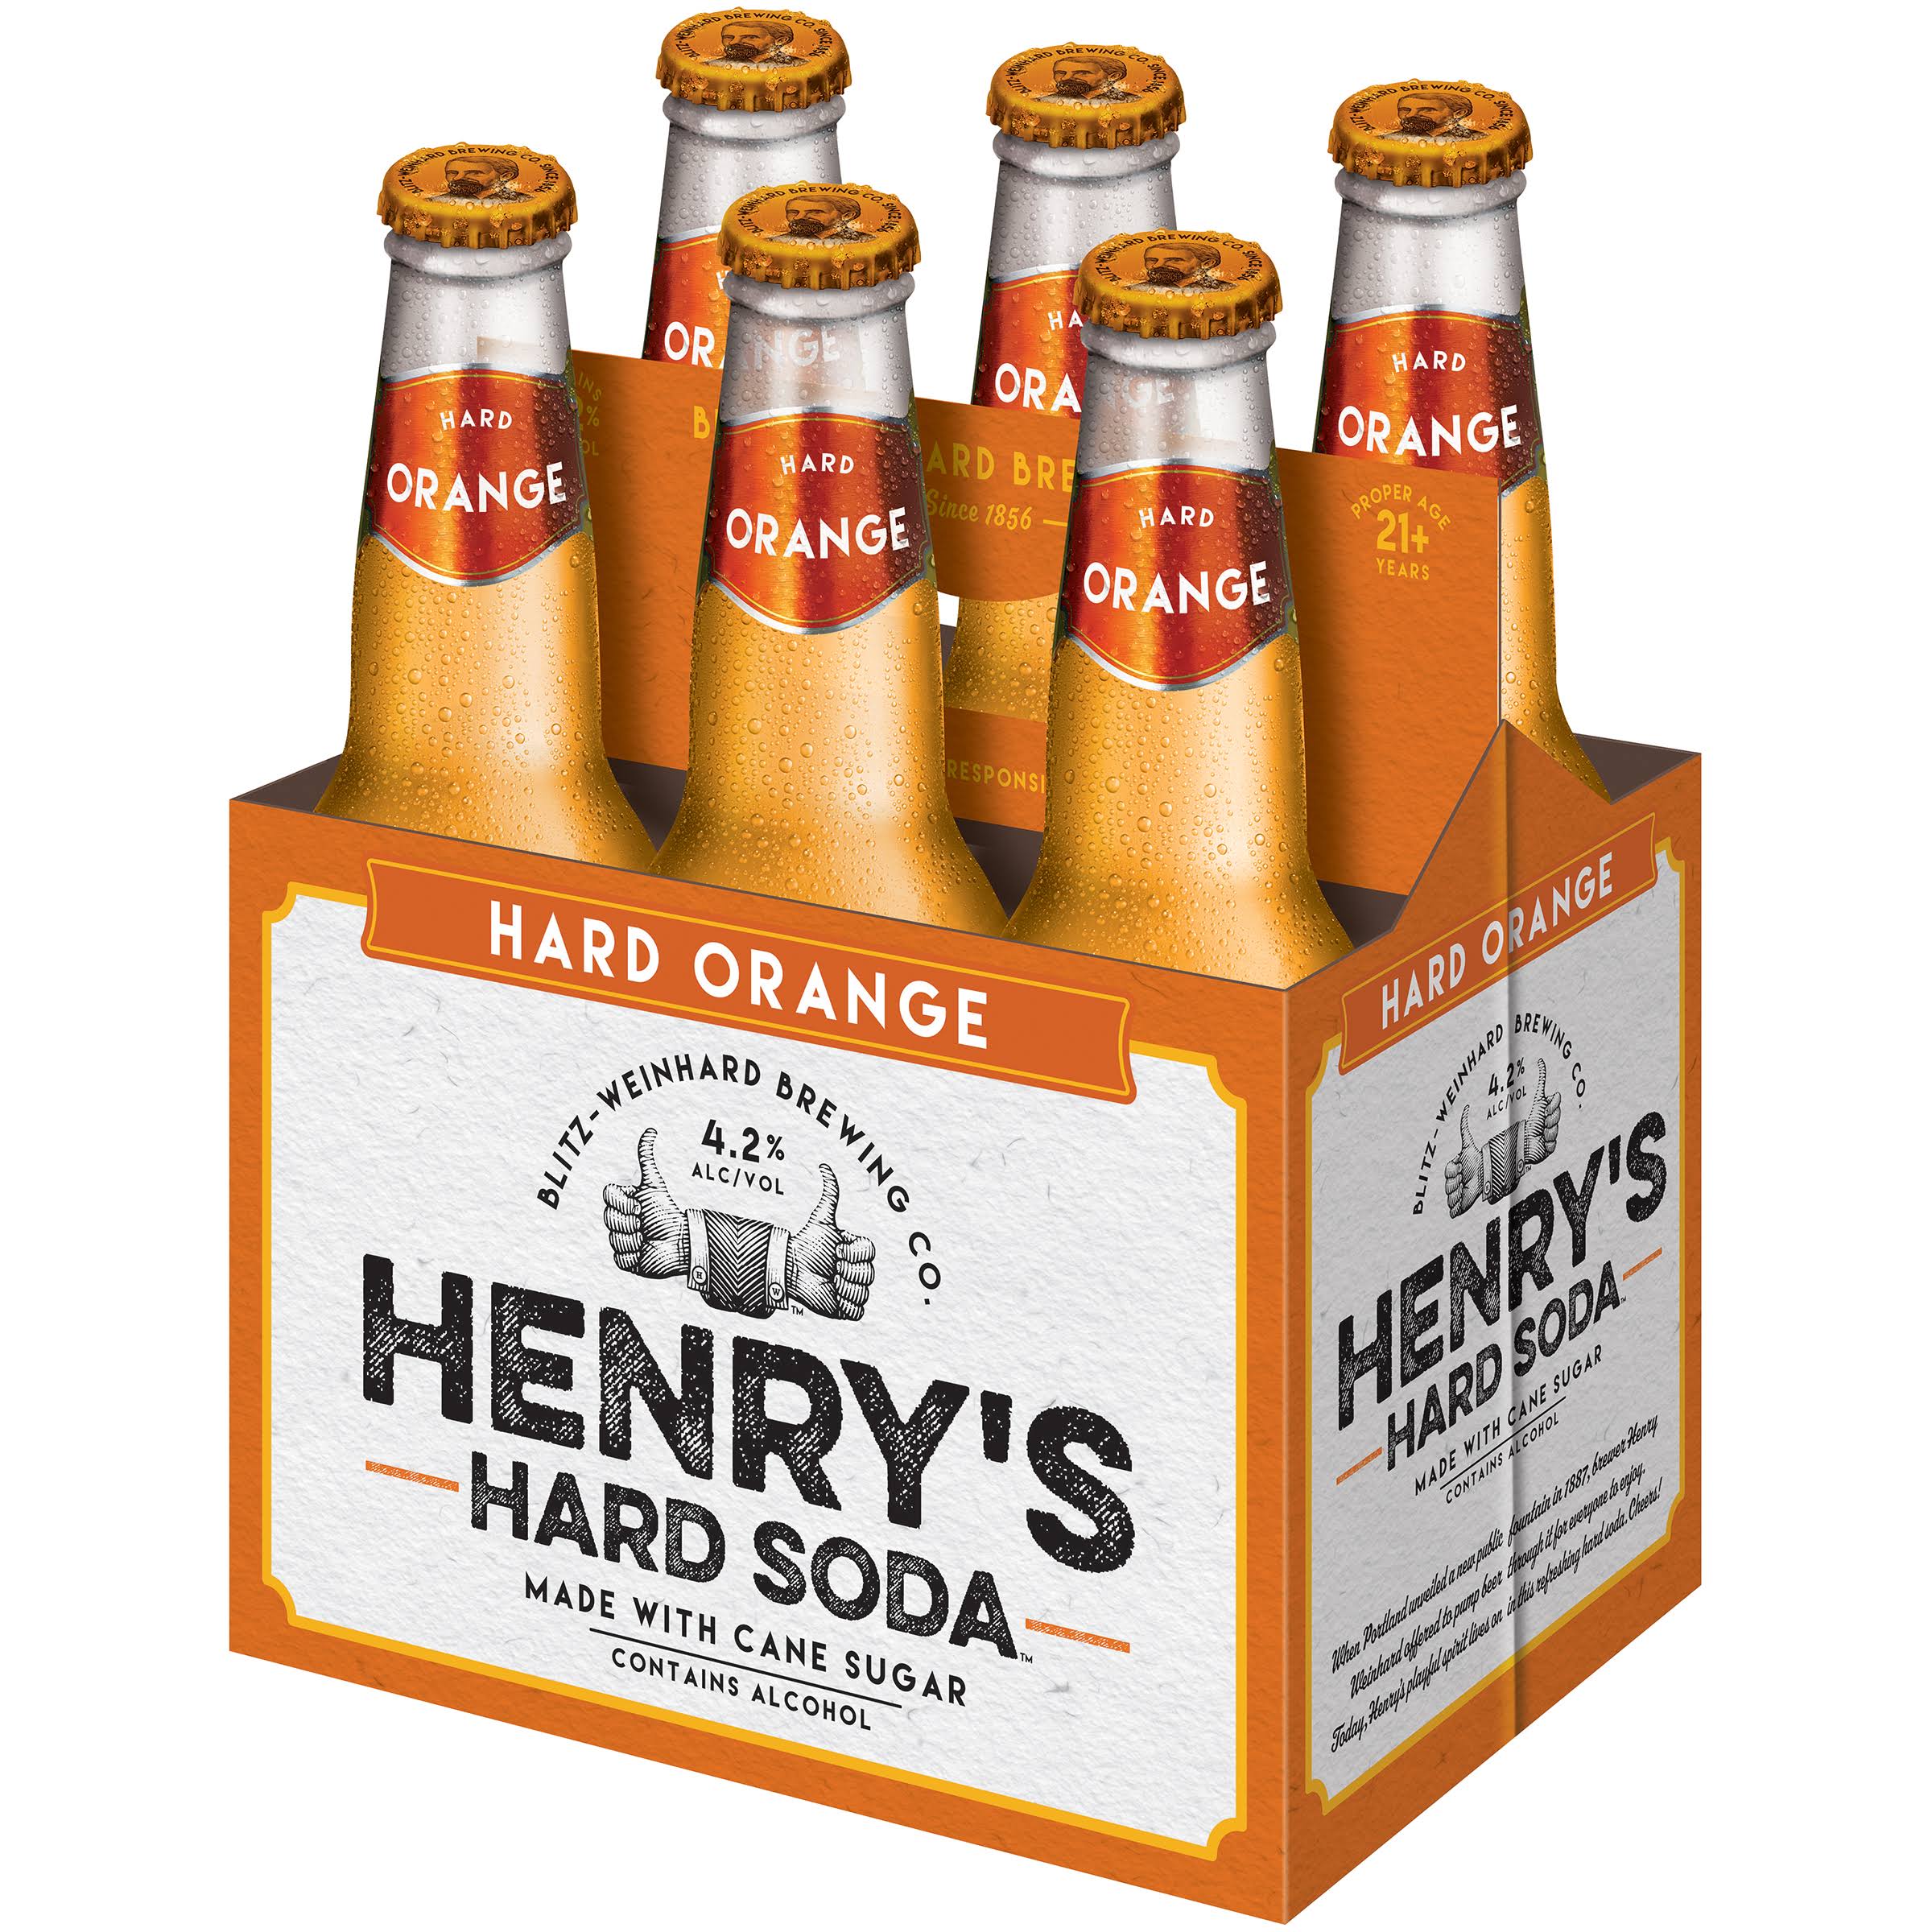 Henry's Hard Soda Hard Orange Soda - 12oz, 6pk